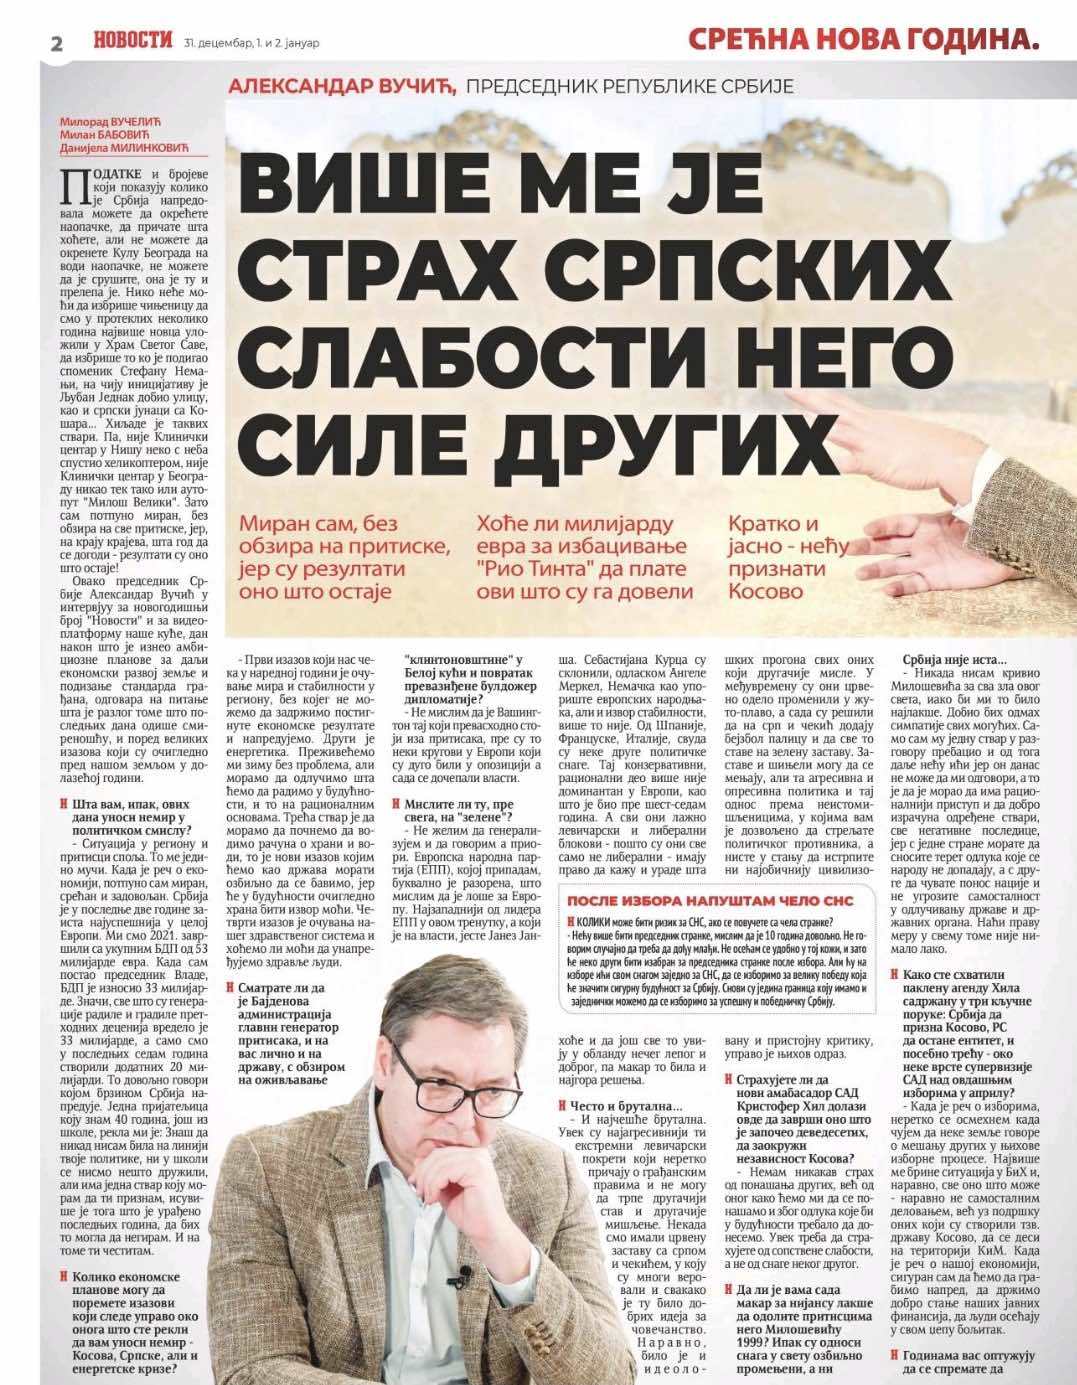 Vucic u intervjuu za Novosti